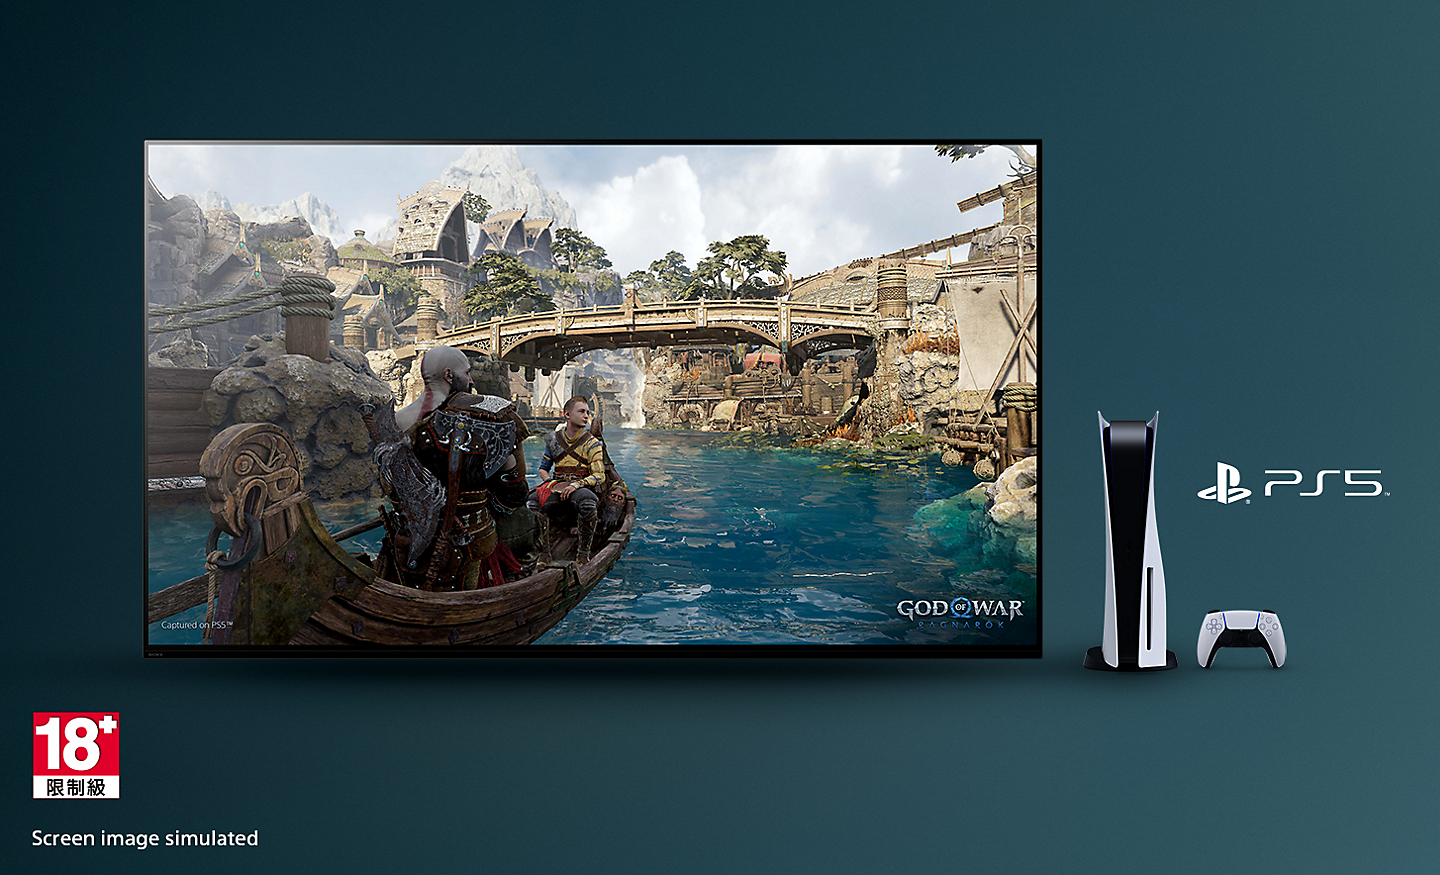 BRAVIA TV 的螢幕上是《戰神：諸神黃昏》的遊戲畫面，可看到河上的一艘船和背景的橋，電視右側是 PS5™ 主機、控制器和 PS5™ 標誌